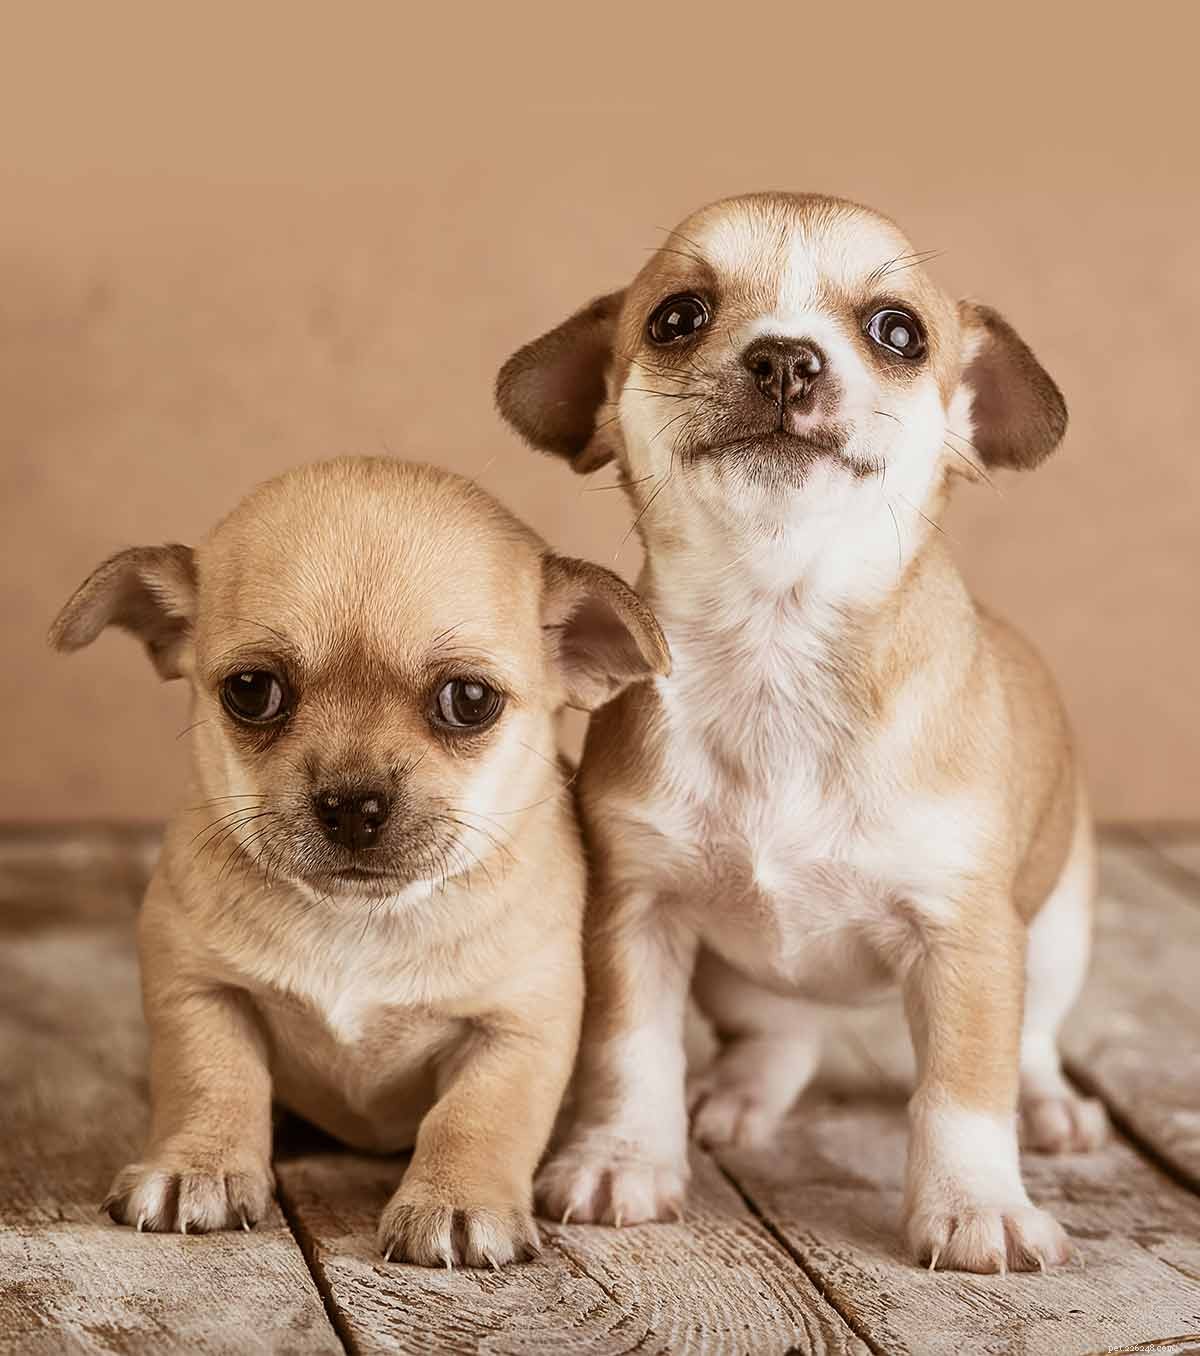 Jména čivavy – 300 nápadů na jména roztomilých psů čivav